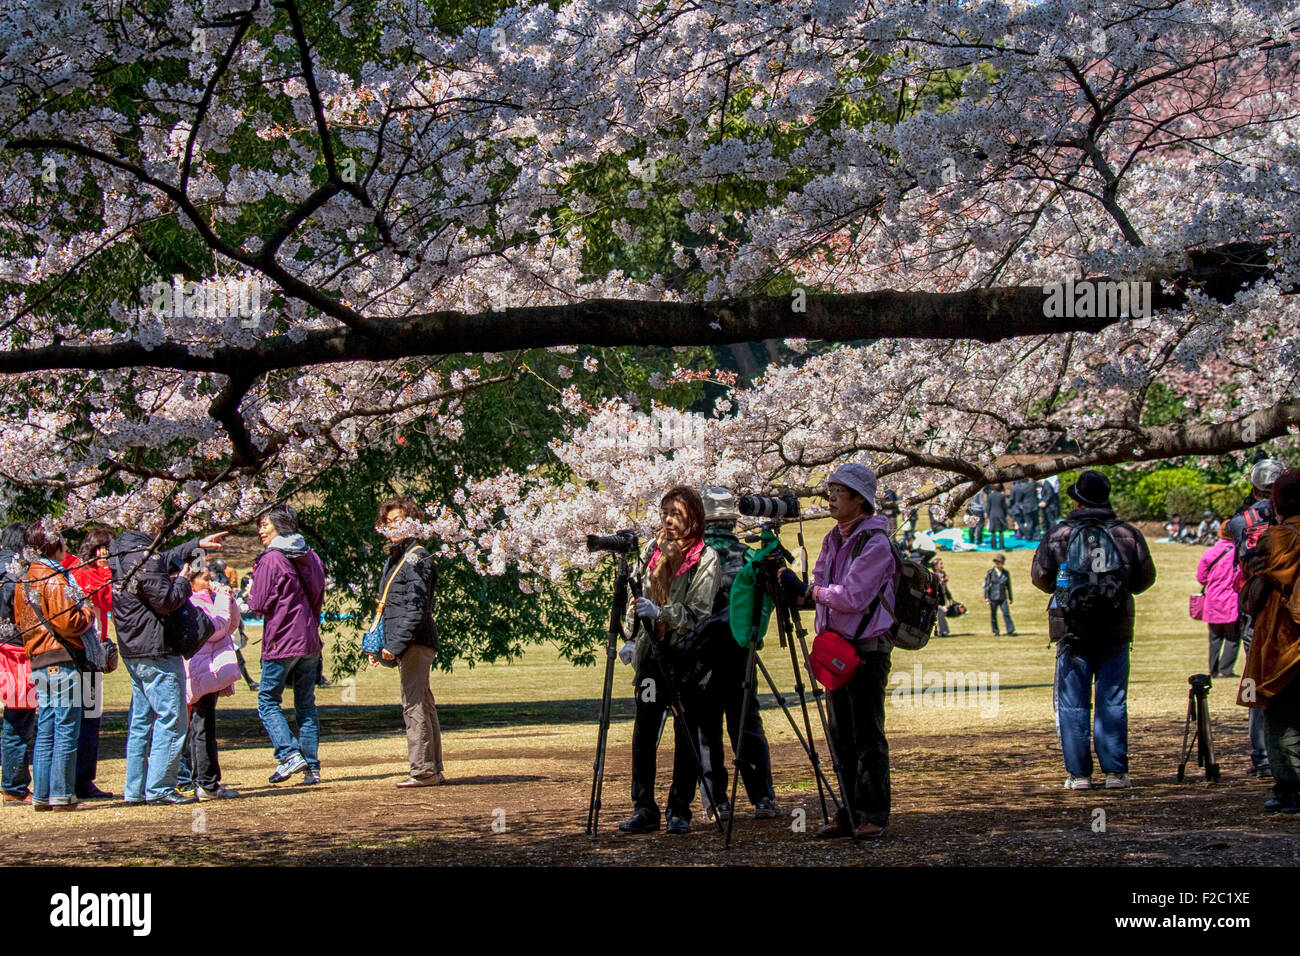 Photographier les cerisiers en fleurs au cours de la célébration des cerisiers en fleur (appelée hanami) à Tokyo Banque D'Images